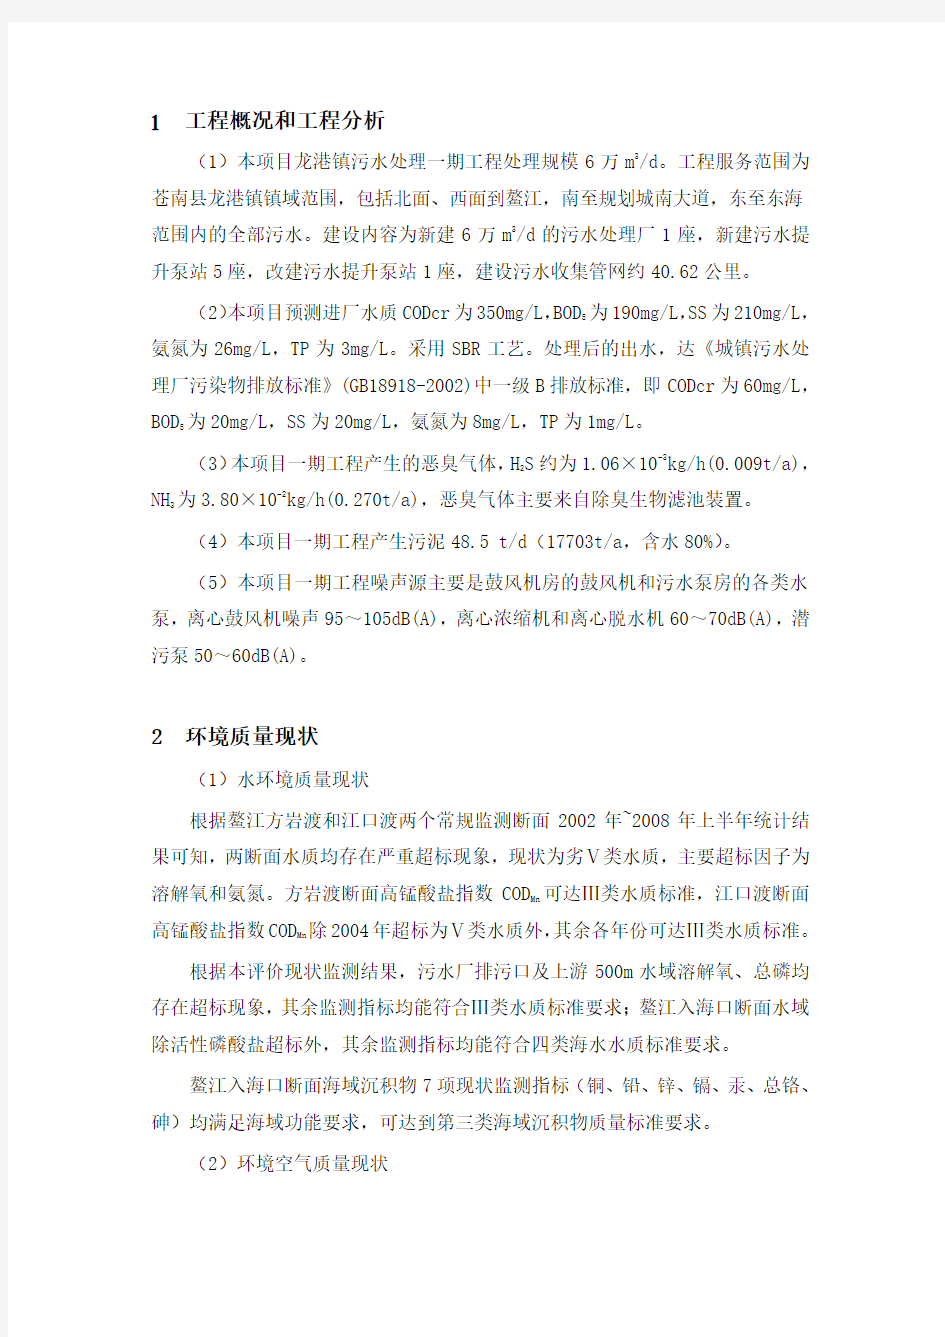 苍南县龙港镇污水处理一期工程环境影响报告书简本